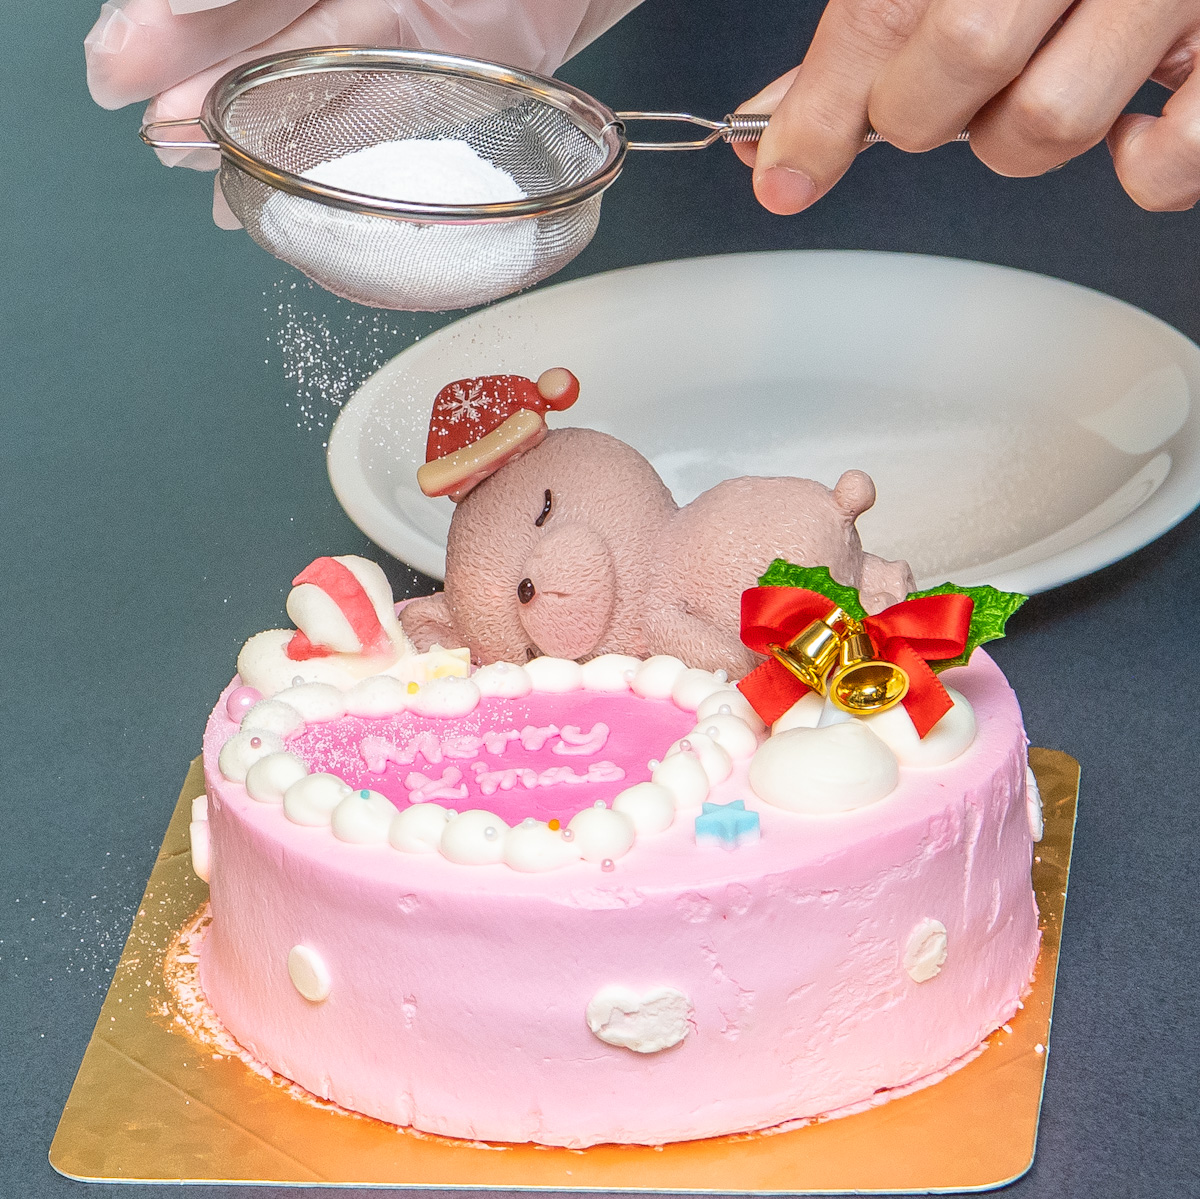 Milkymoco／くまちゃんサンタの センイルケーキ デコレーション